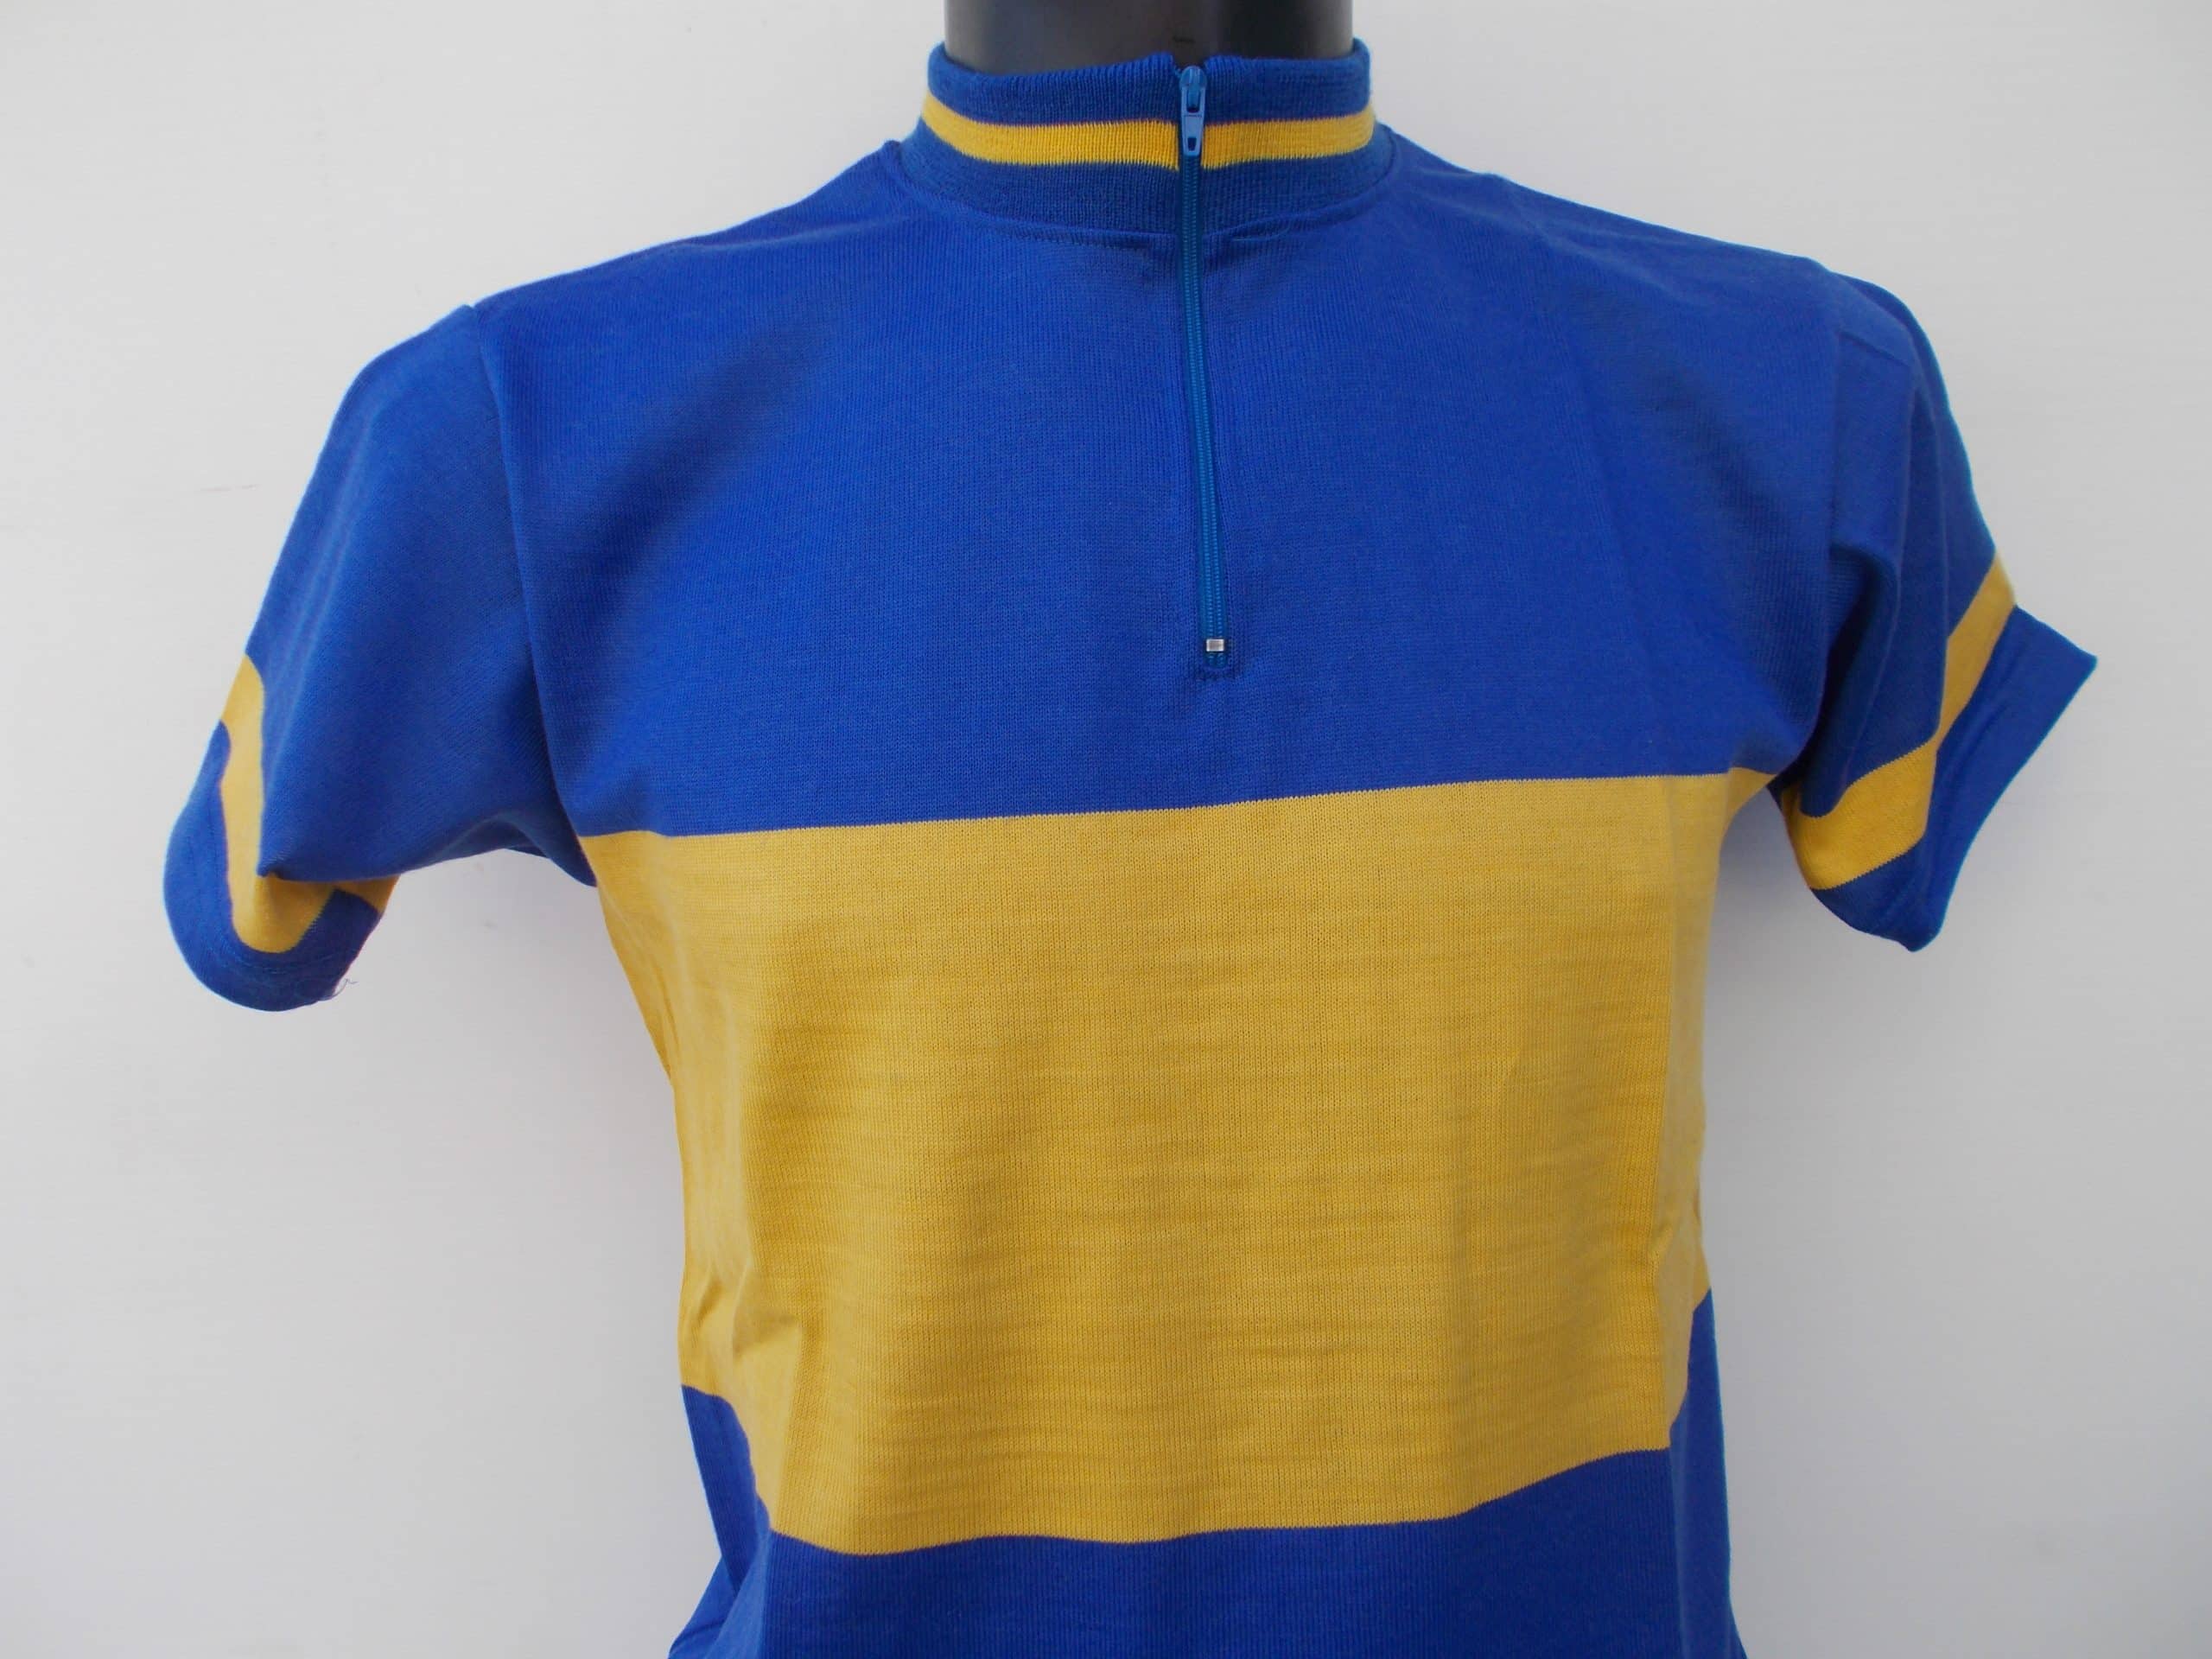 Maglia calcio lana vintage manica corta modello FIORENTINA anni 80 bianca -  3M Caverni Abbigliamento tecnico sportivo